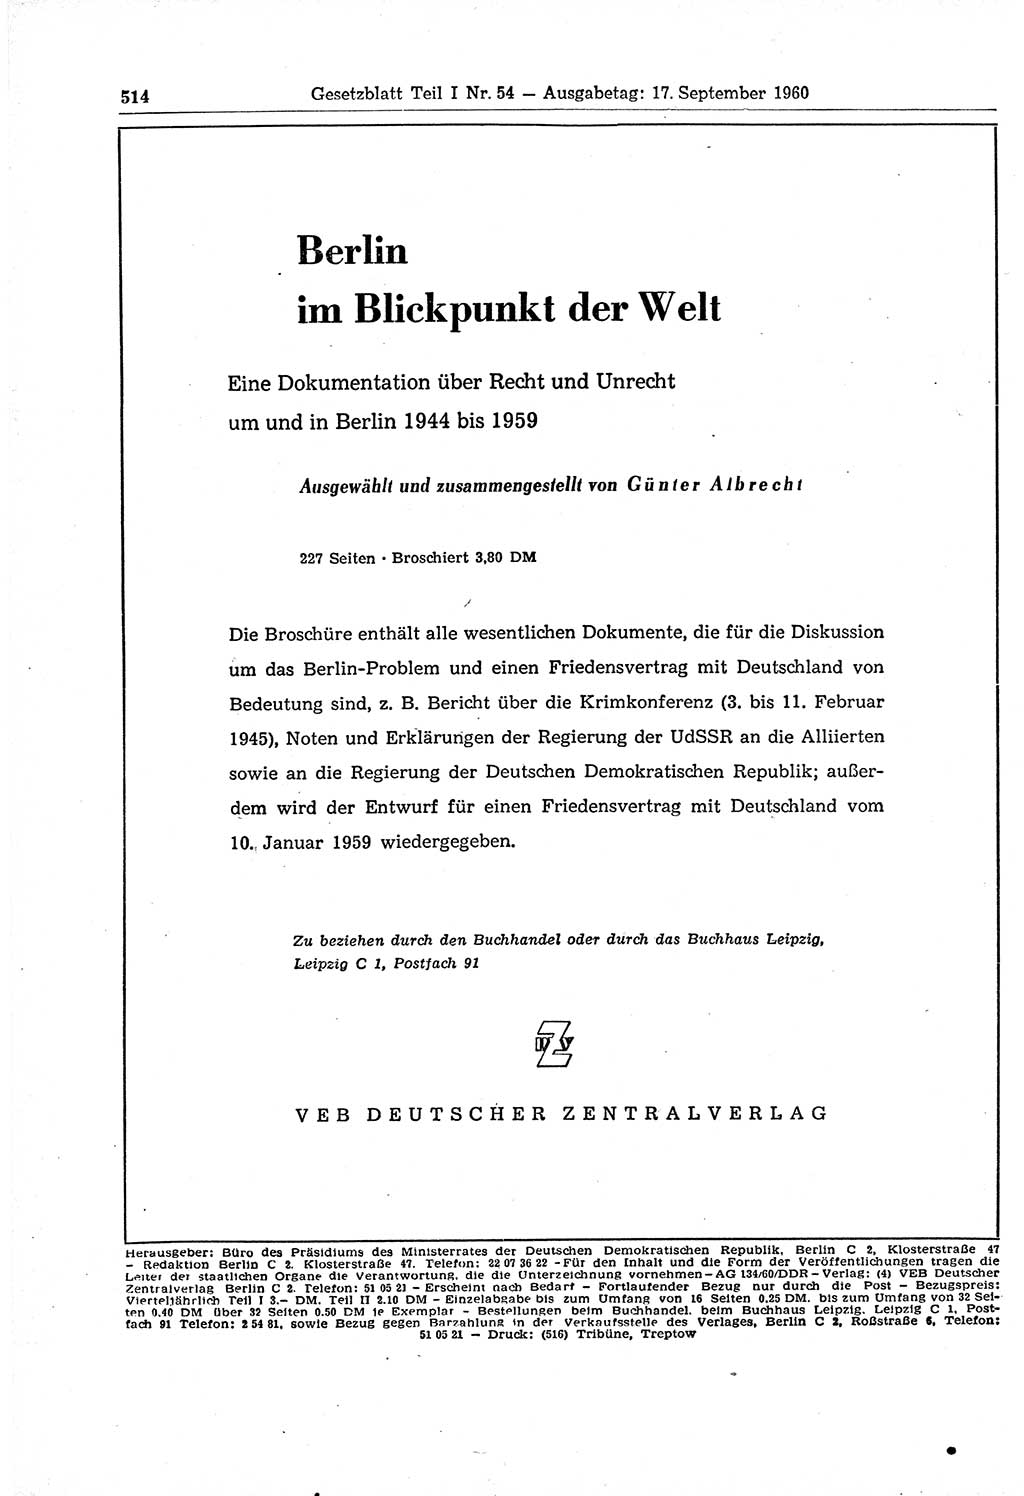 Gesetzblatt (GBl.) der Deutschen Demokratischen Republik (DDR) Teil Ⅰ 1960, Seite 514 (GBl. DDR Ⅰ 1960, S. 514)